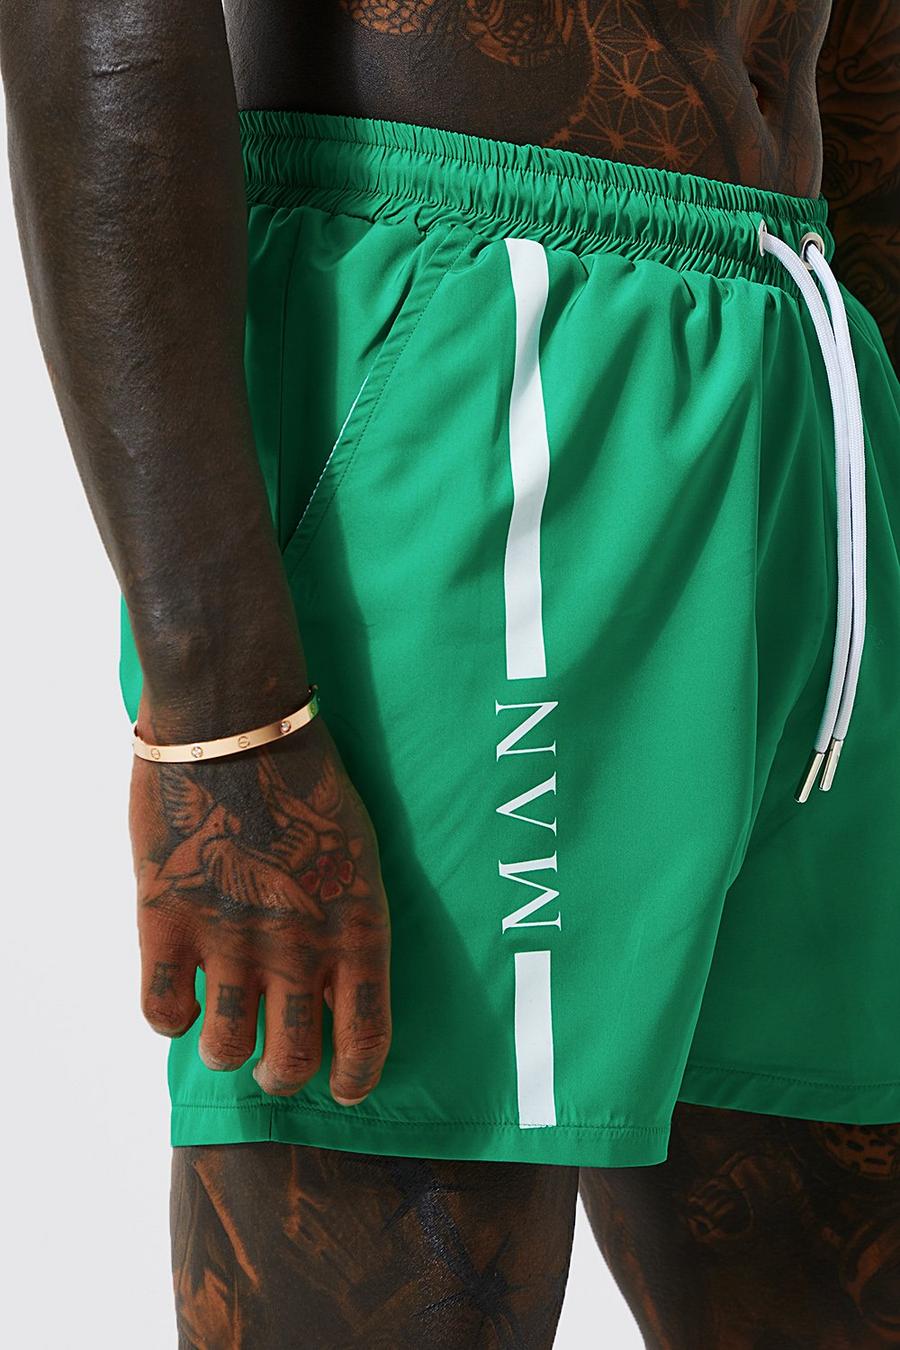 ירוק gerde שורט בגד ים באורך בינוני עם כיתוב Man על גבי פס